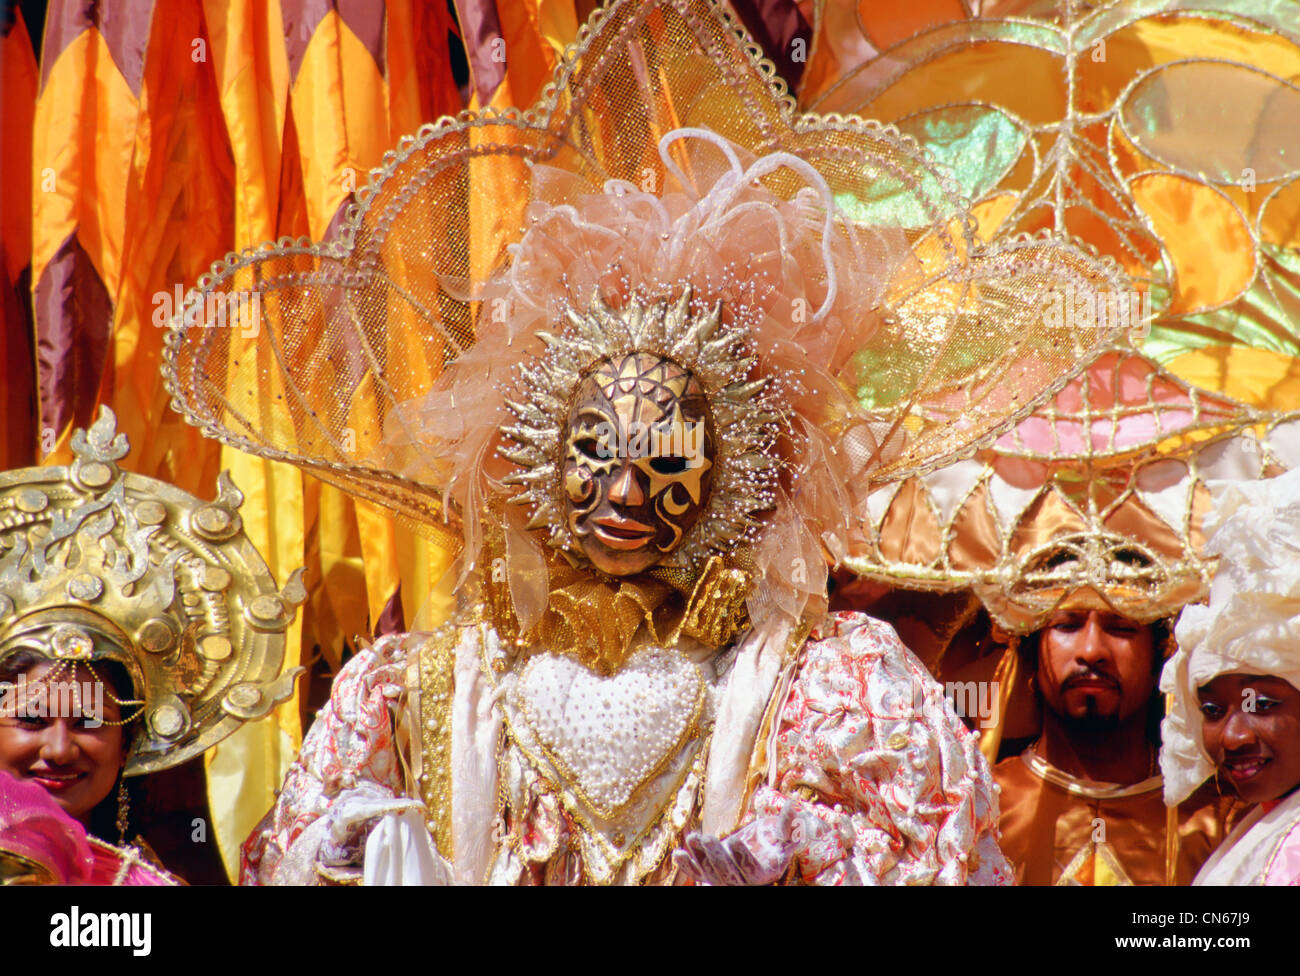 Danseurs portant des costumes de carnaval traditionnel dans des tons pastel et d'or à Trinidad, Caraïbes Banque D'Images